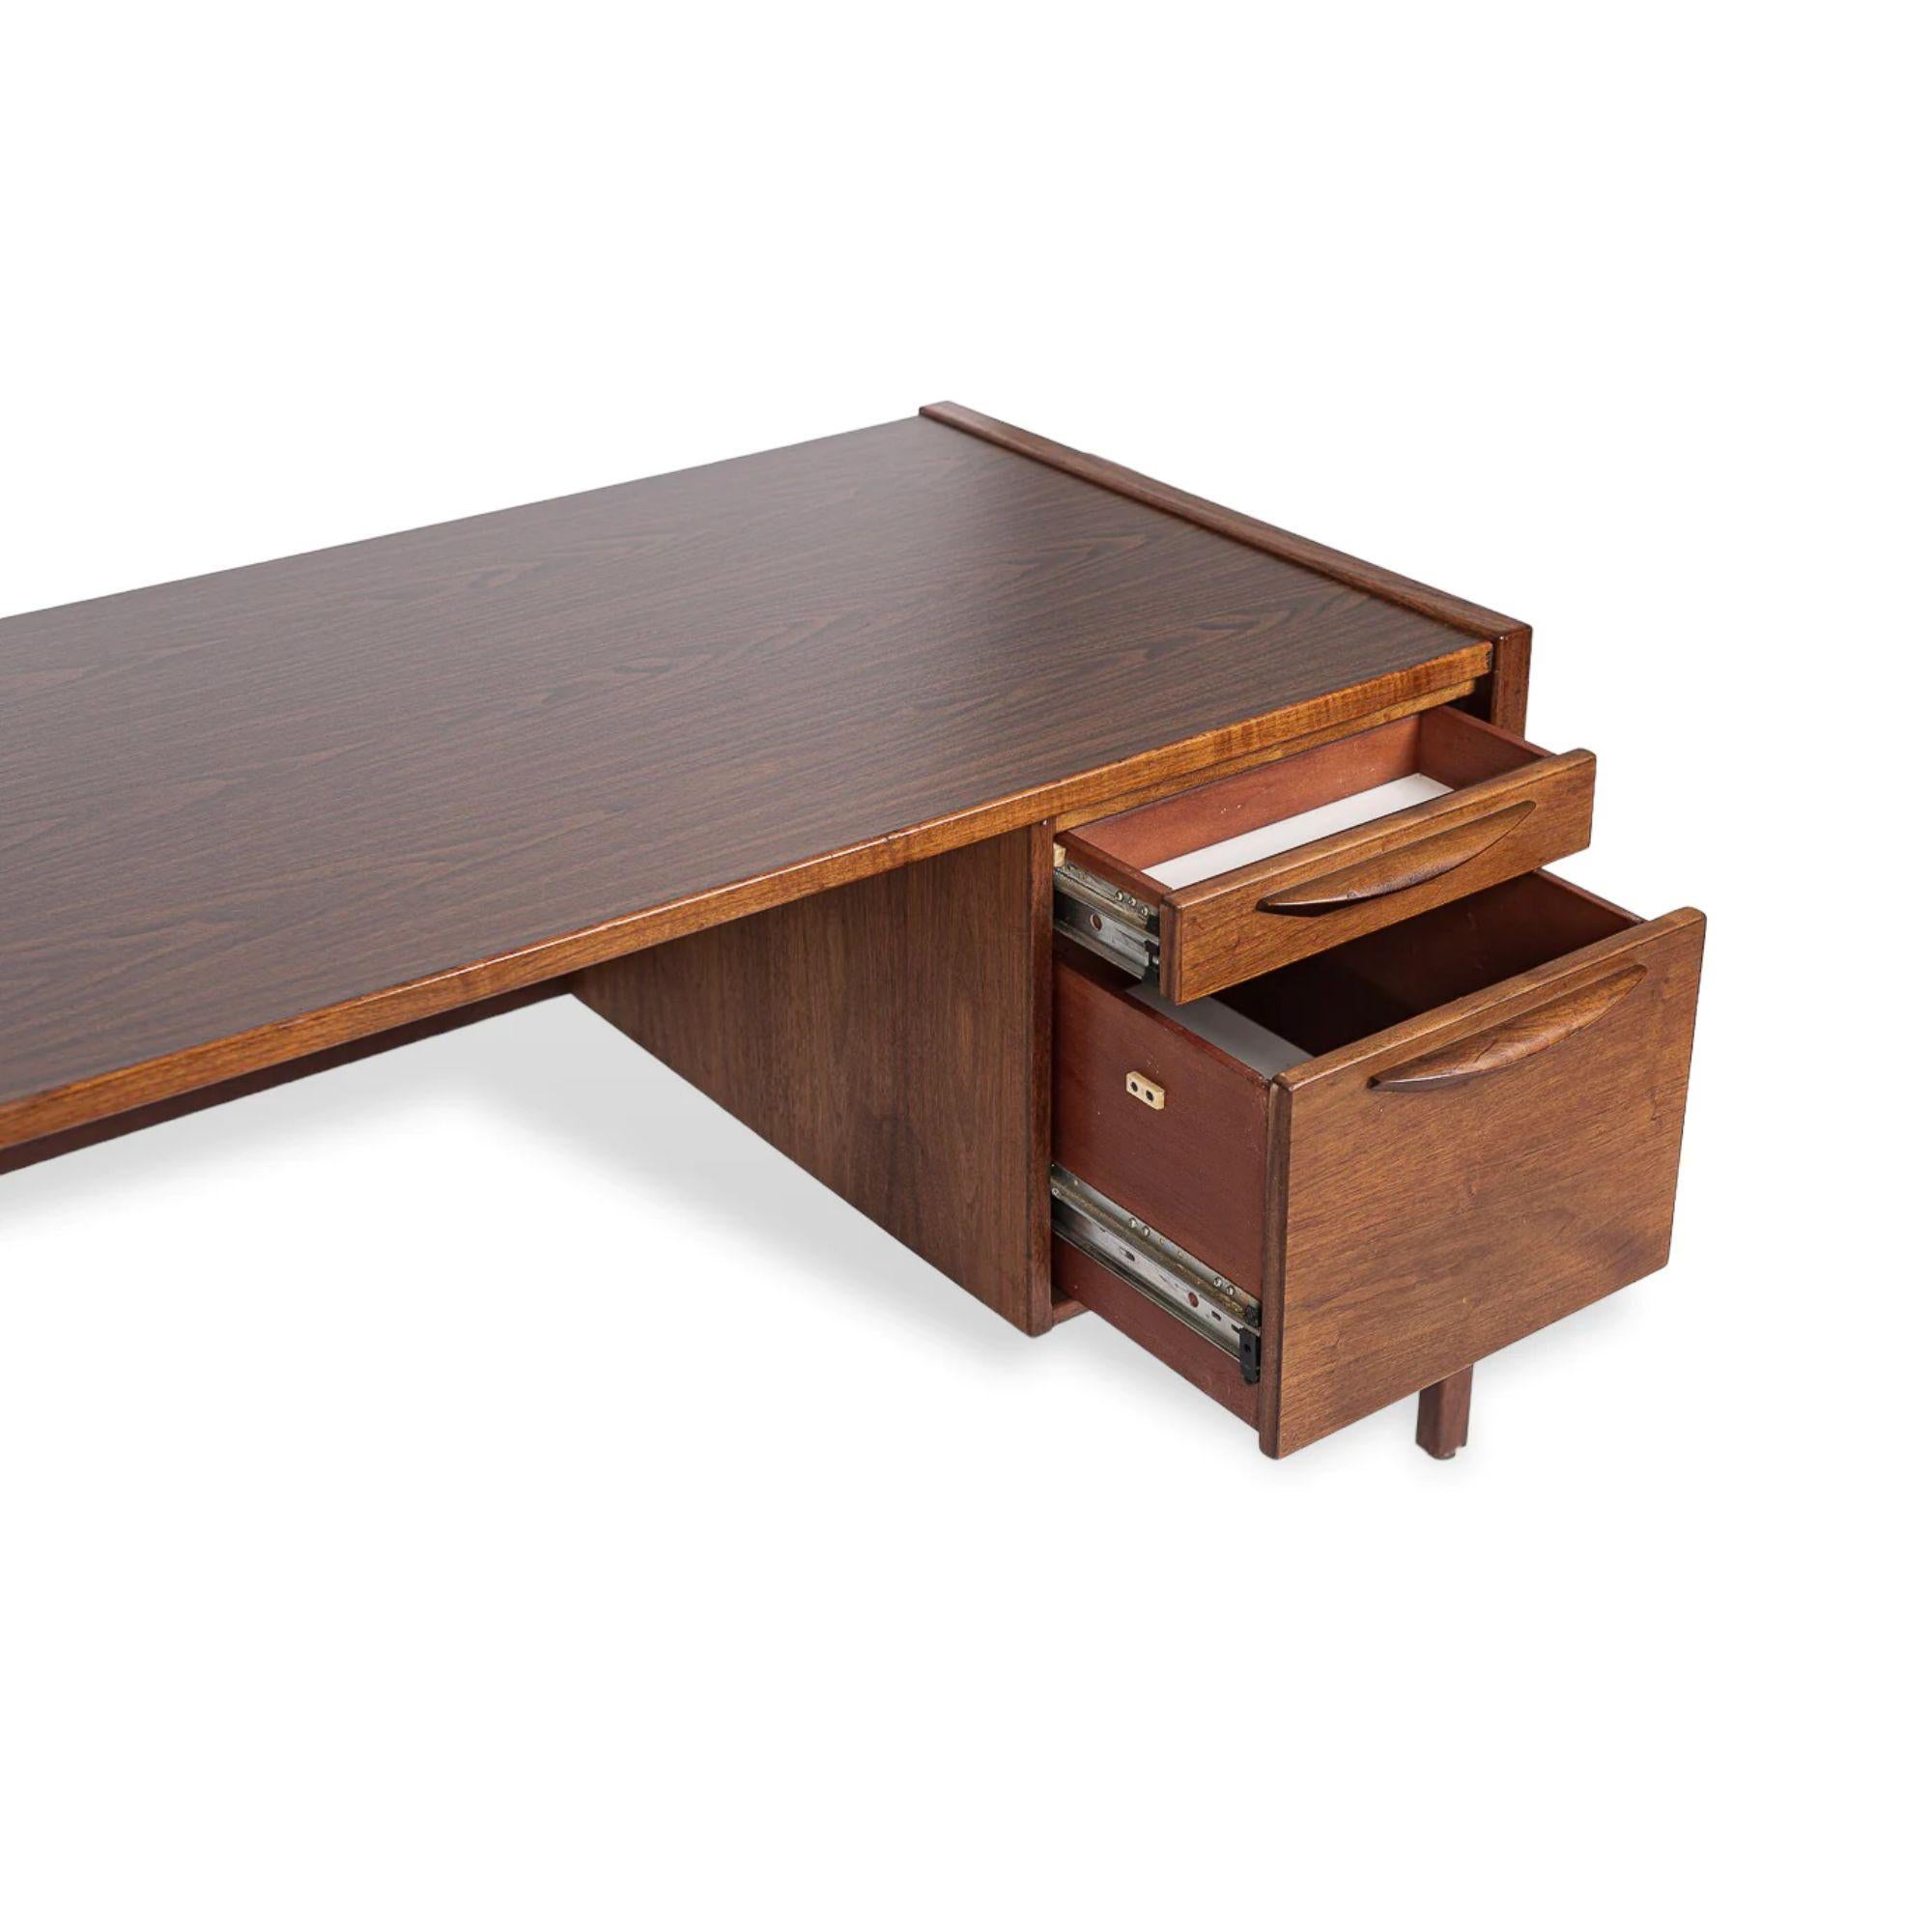 Walnut 1960s Midcentury Desk in Wood & Laminate by Jens Risom For Sale